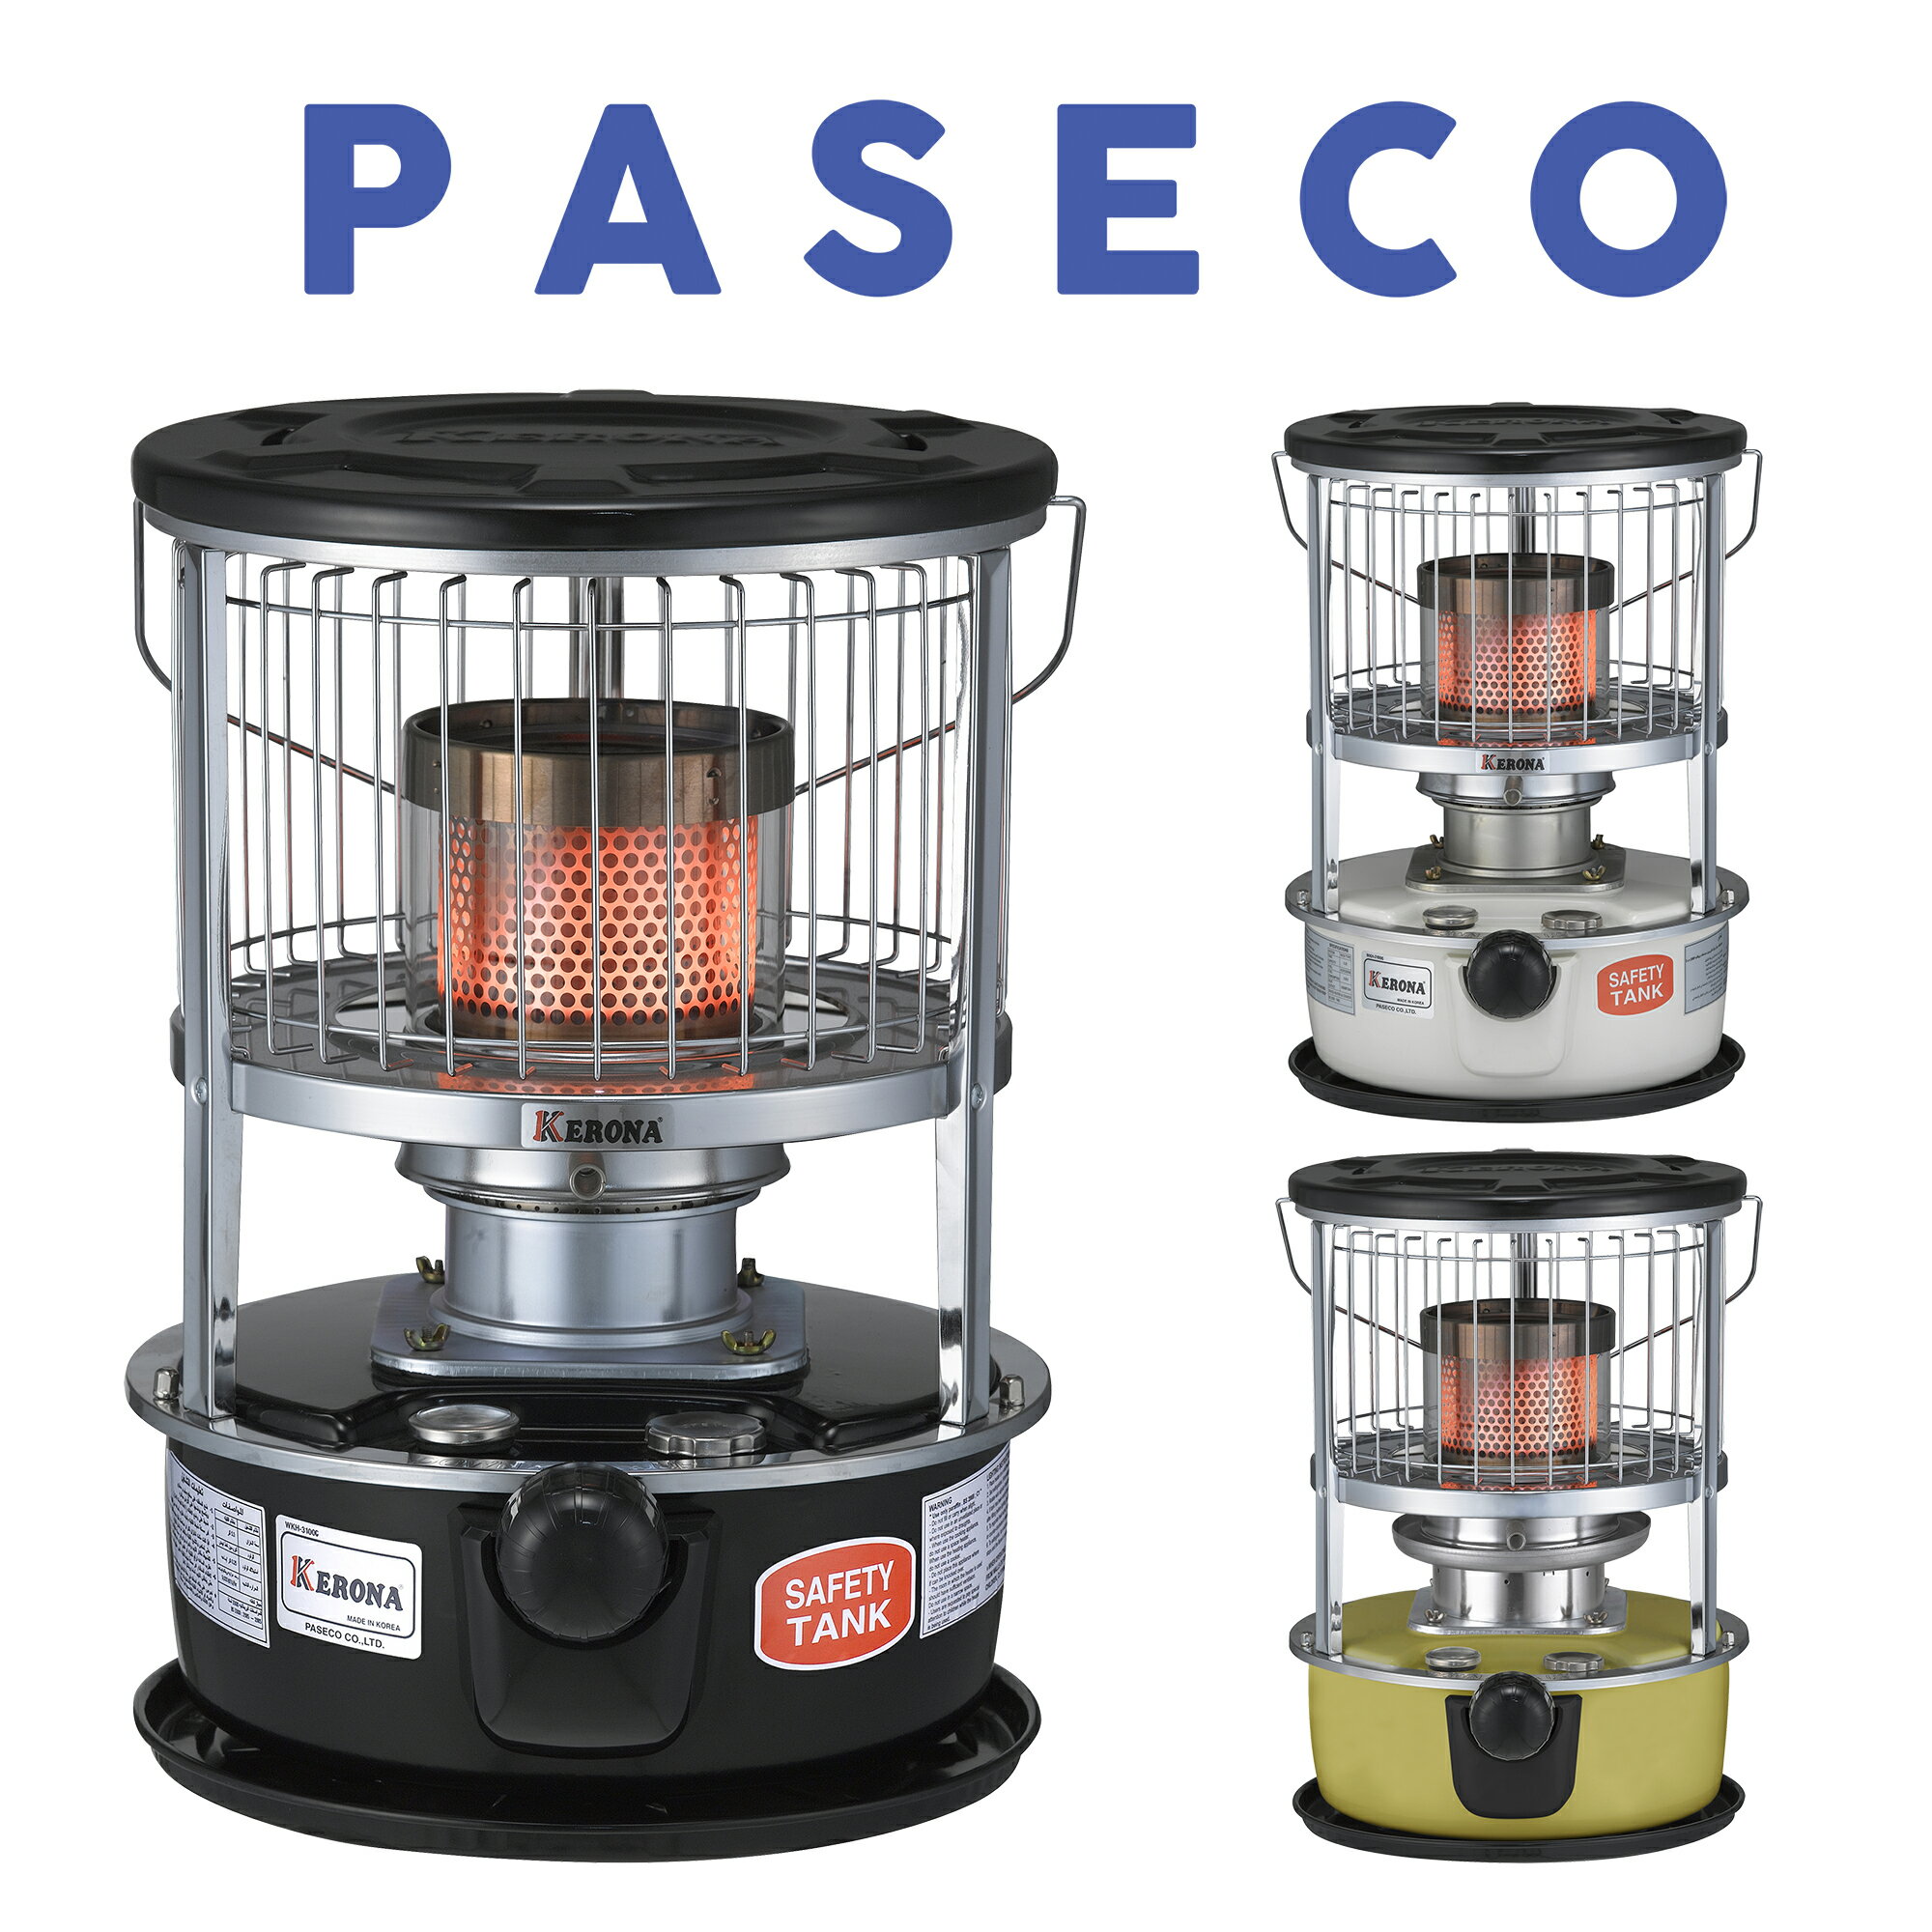 PASECO 石油ストーブ PKH-3100G